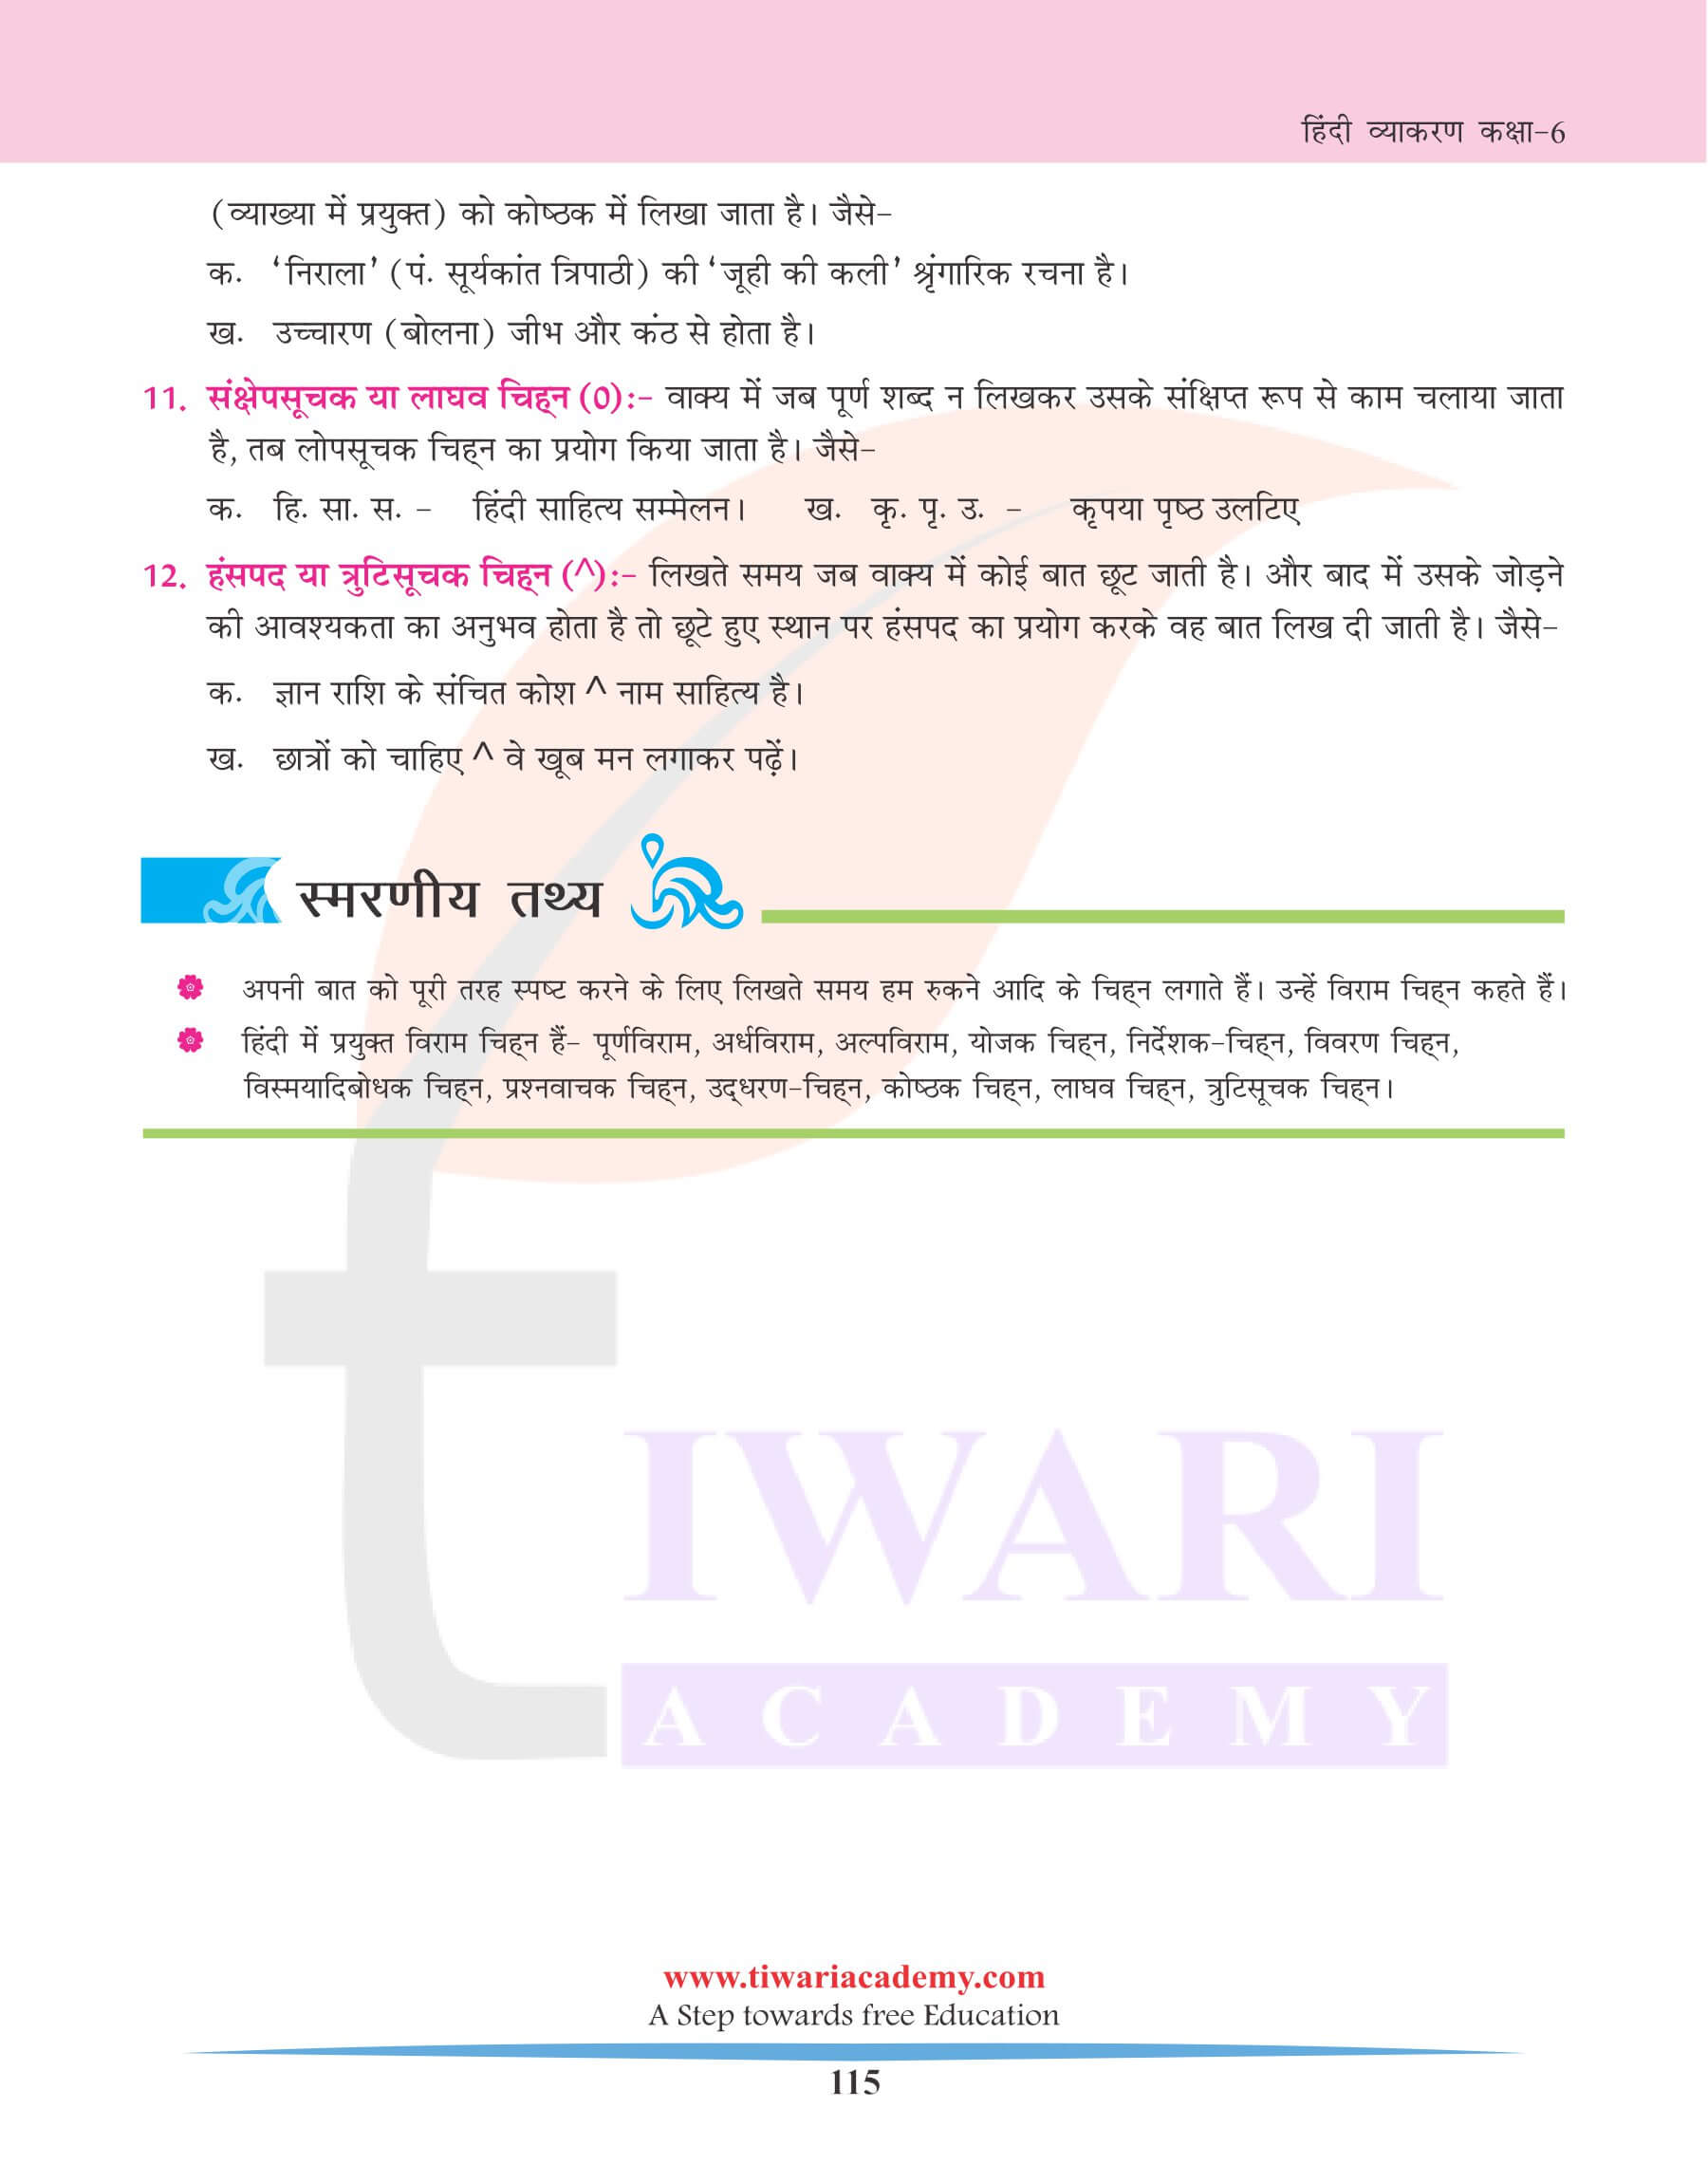 कक्षा 6 हिंदी व्याकरण अध्याय 26 विराम चिह्न के नियम